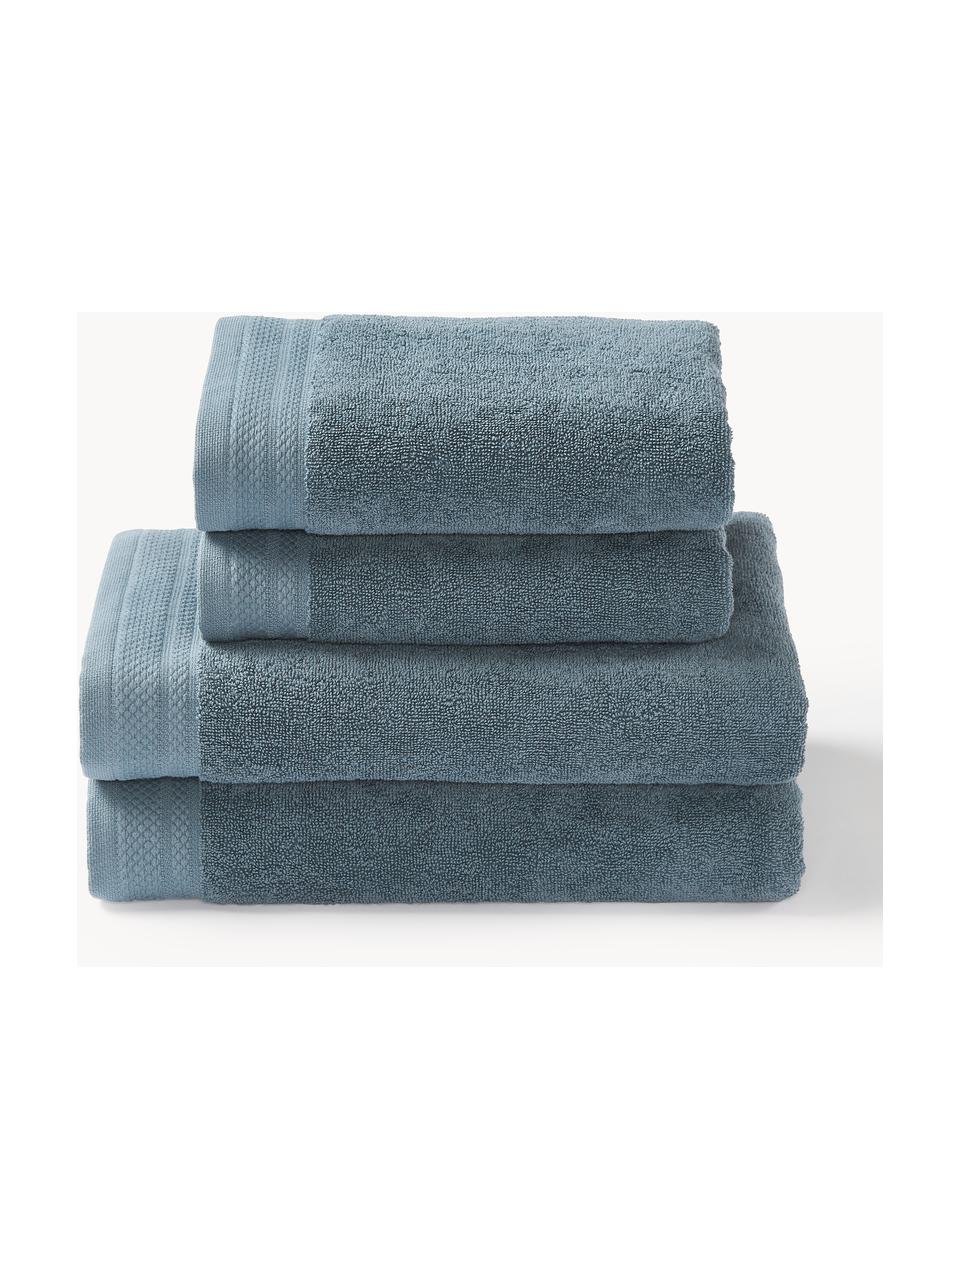 Súprava uterákov z organickej bavlny Premium, rôzne veľkosti, Petrolejová, 6-dielna súprava (uterák na ruky pre hostí, uterák na ruky, osuška)